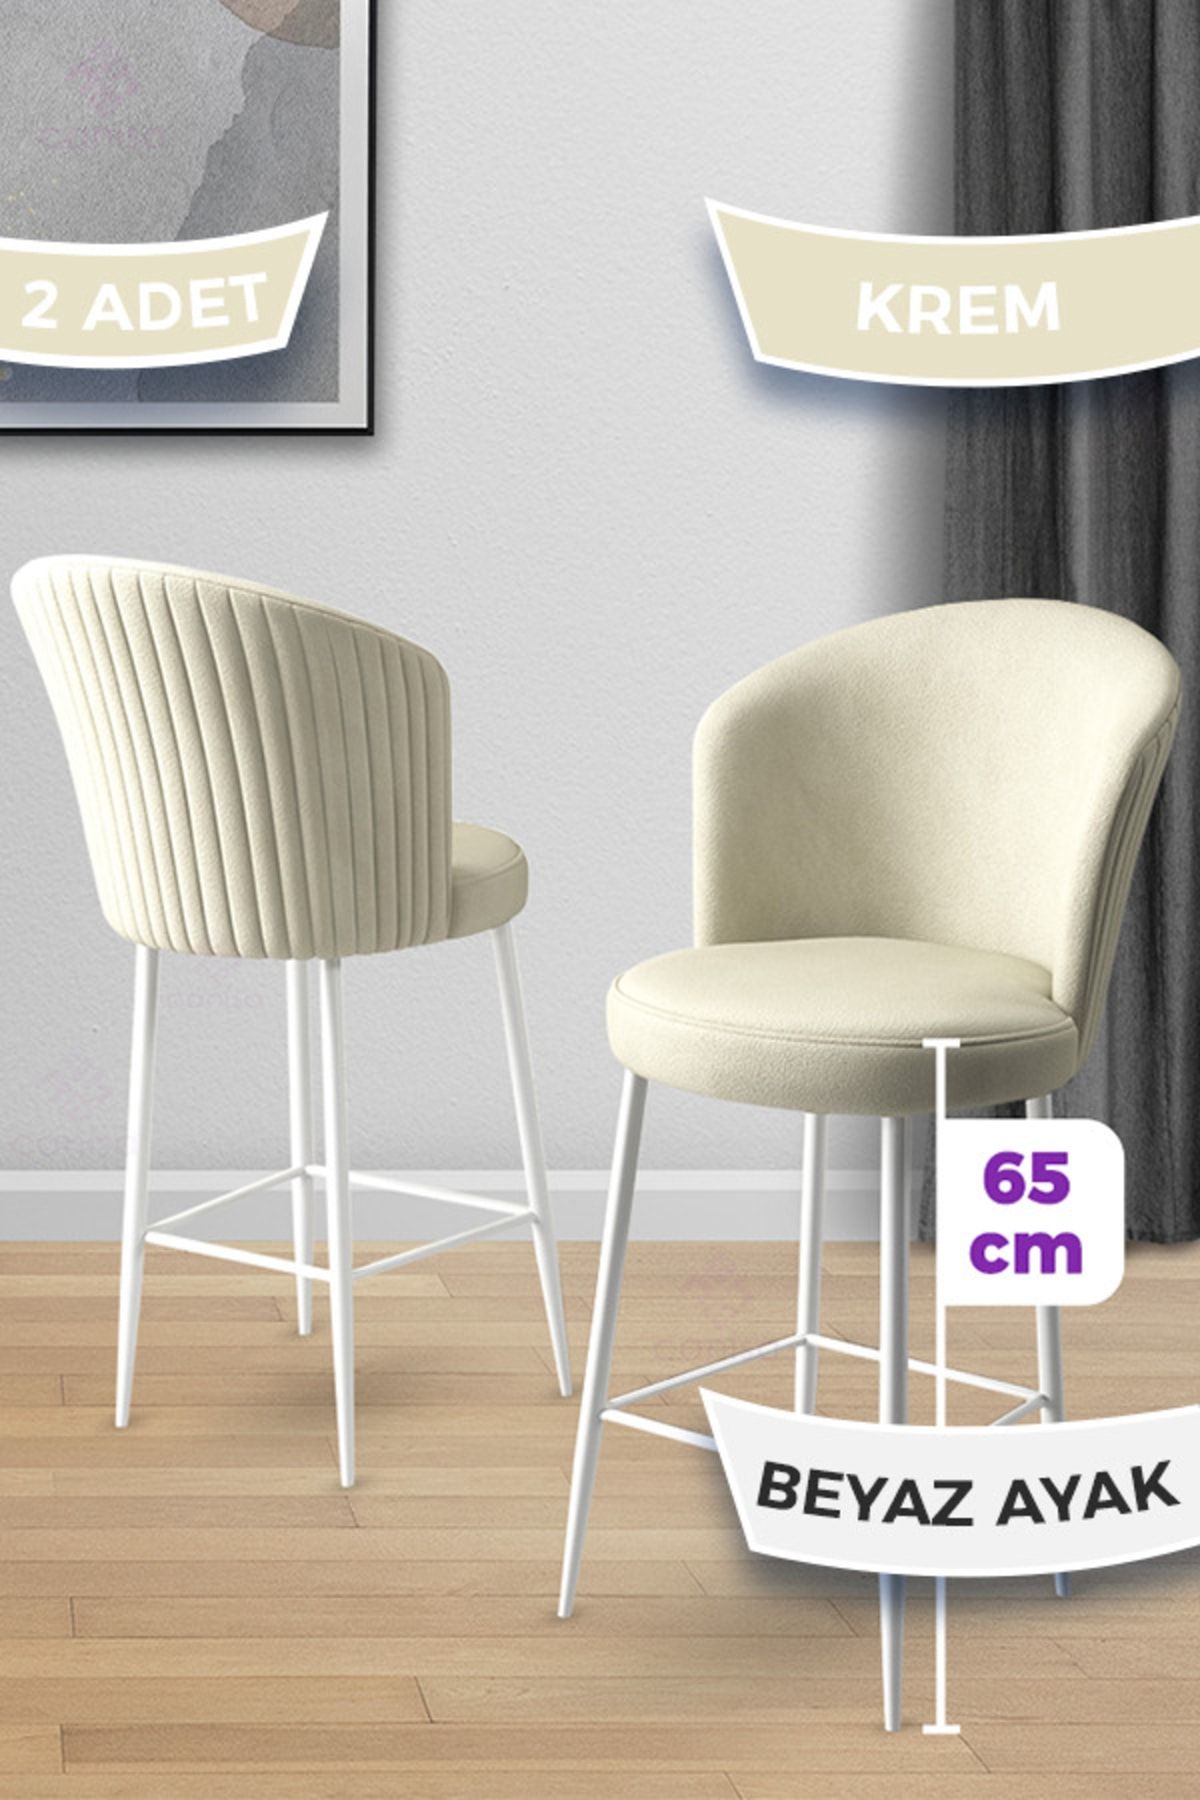 Canisa Concept Alte Serisi 2 Adet Krem Sandalye 65 Cm Ada Mutfak Bar Sandalyesi Babyface Kumaş Beyaz Metal Ayaklı